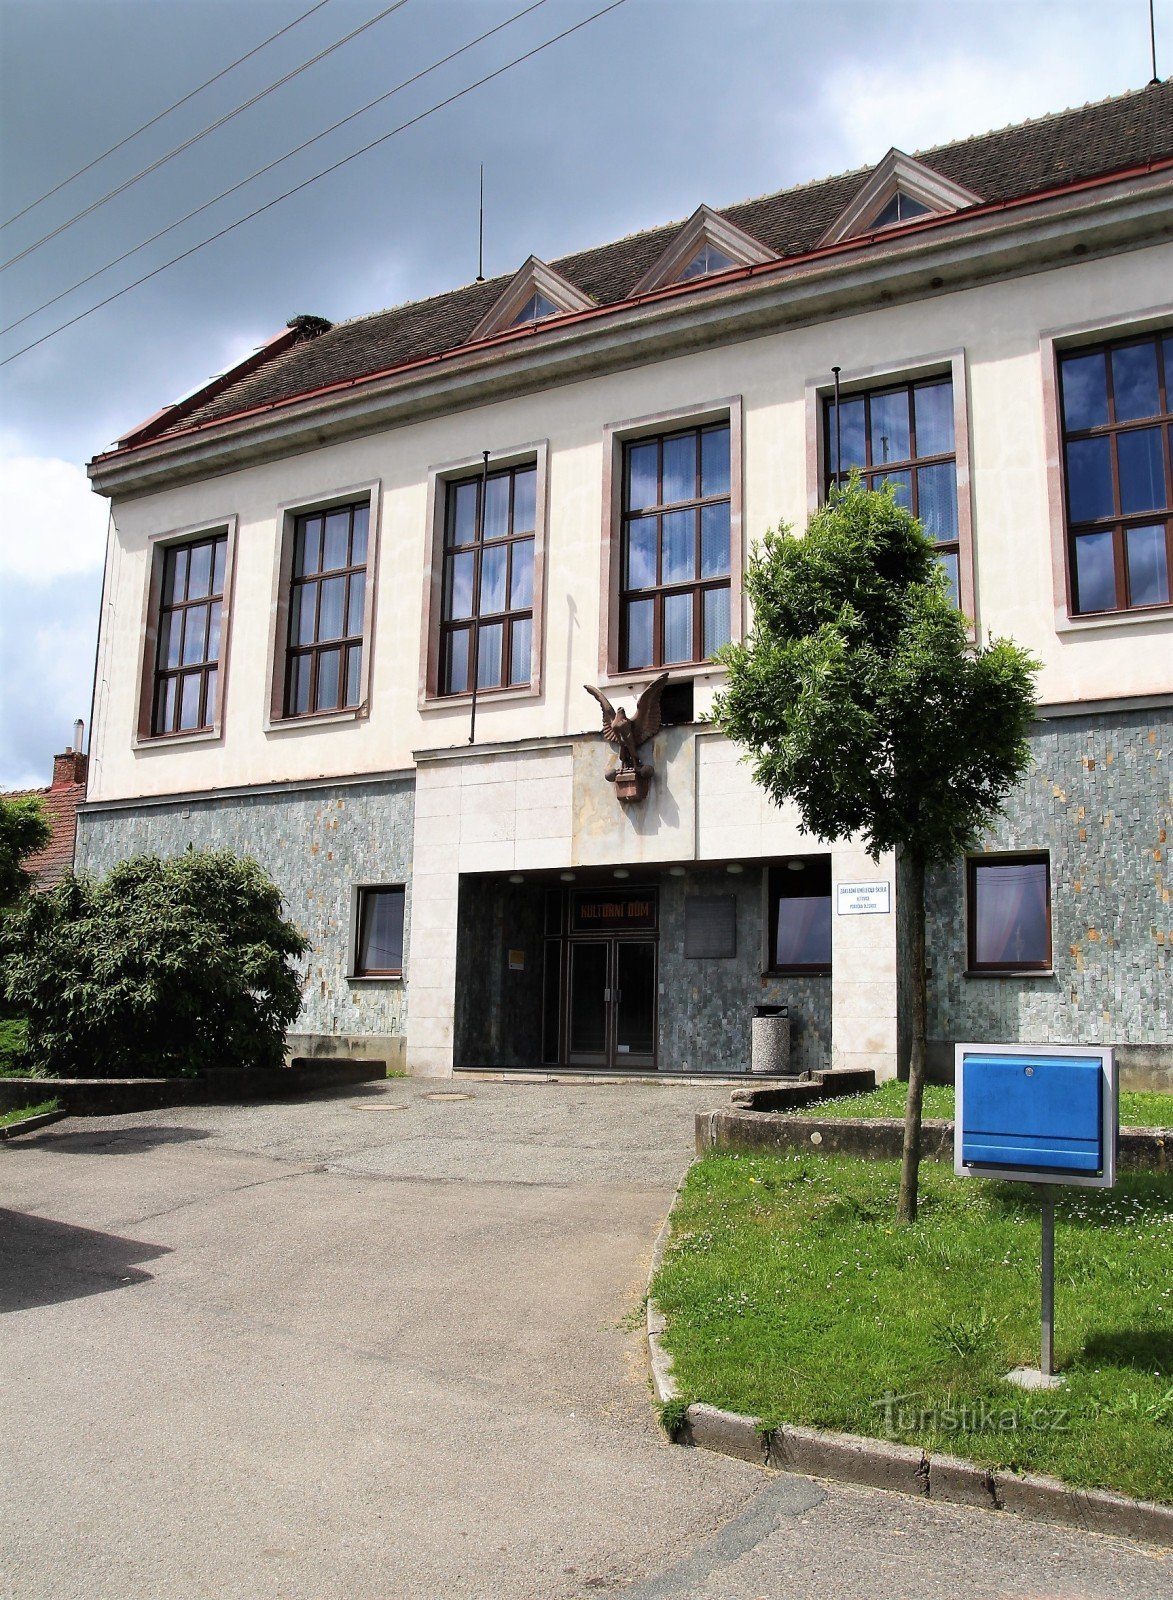 Olešnice - Dom Kultury - sokolnictwo